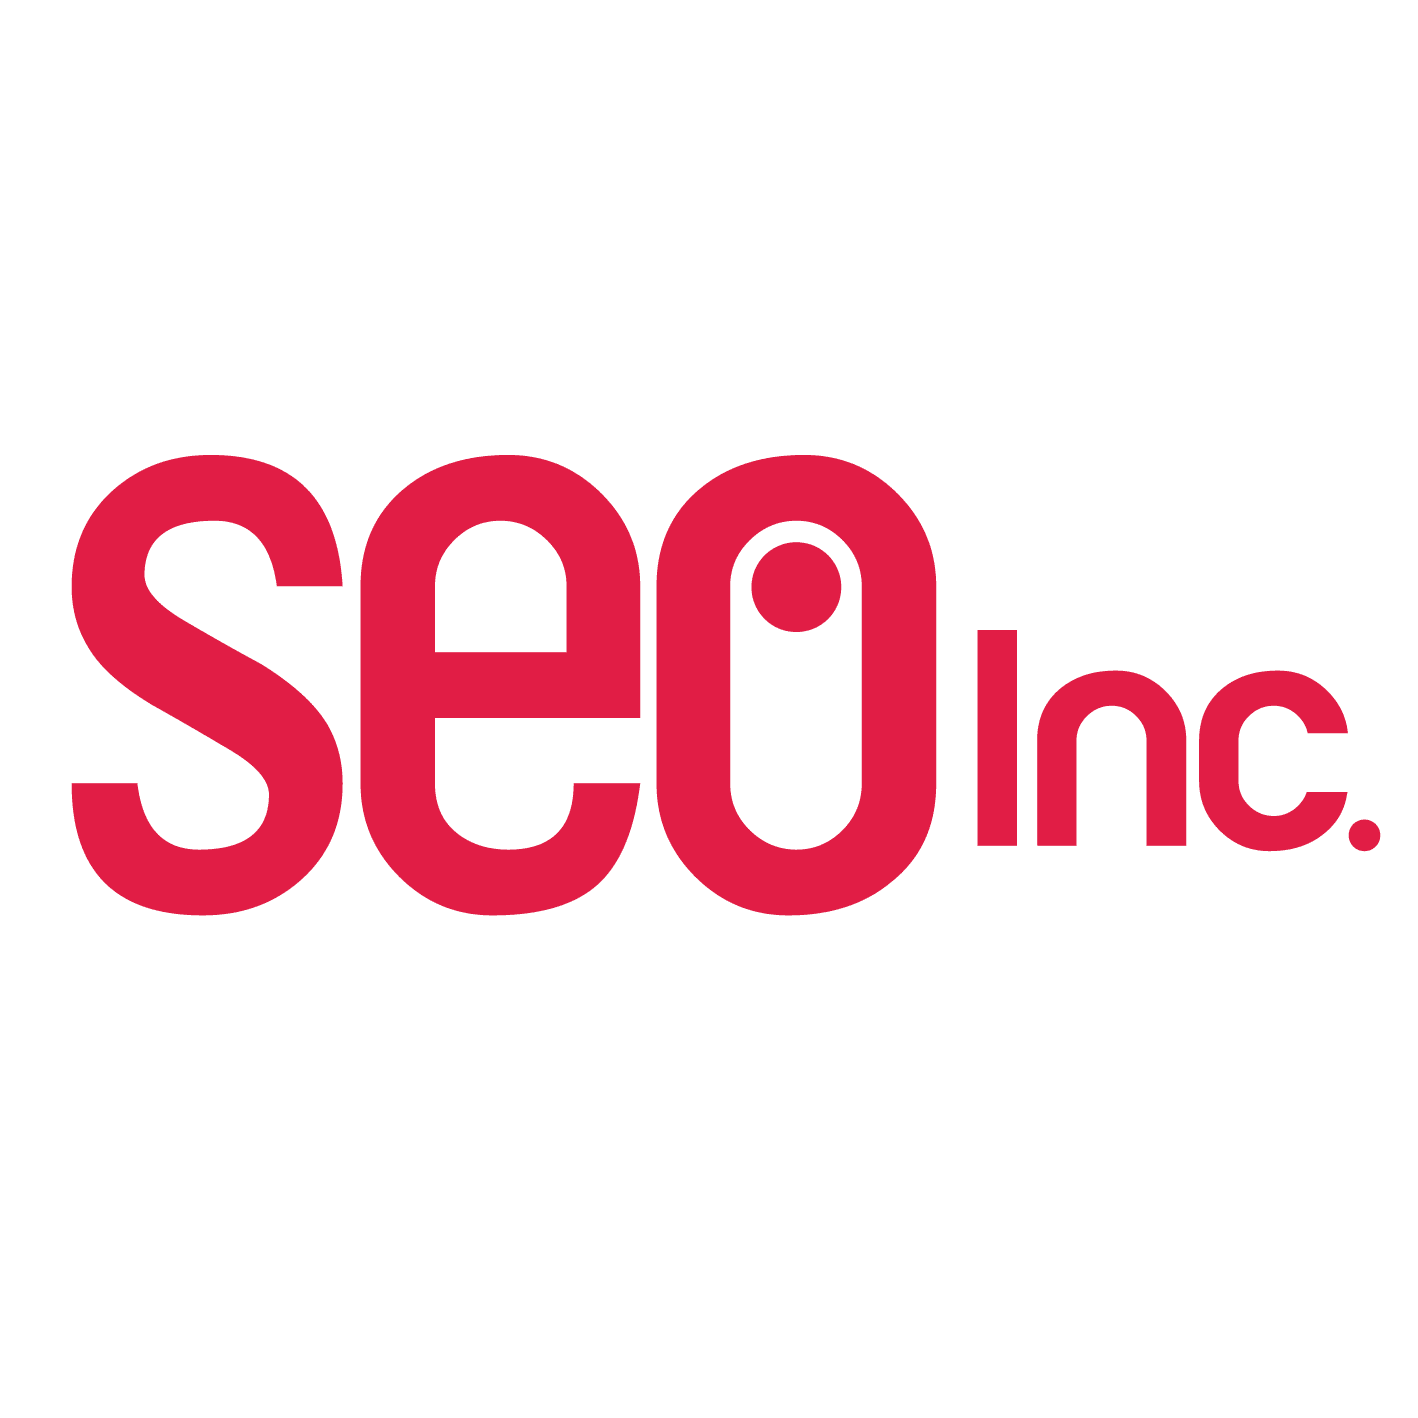 SEO Company logo